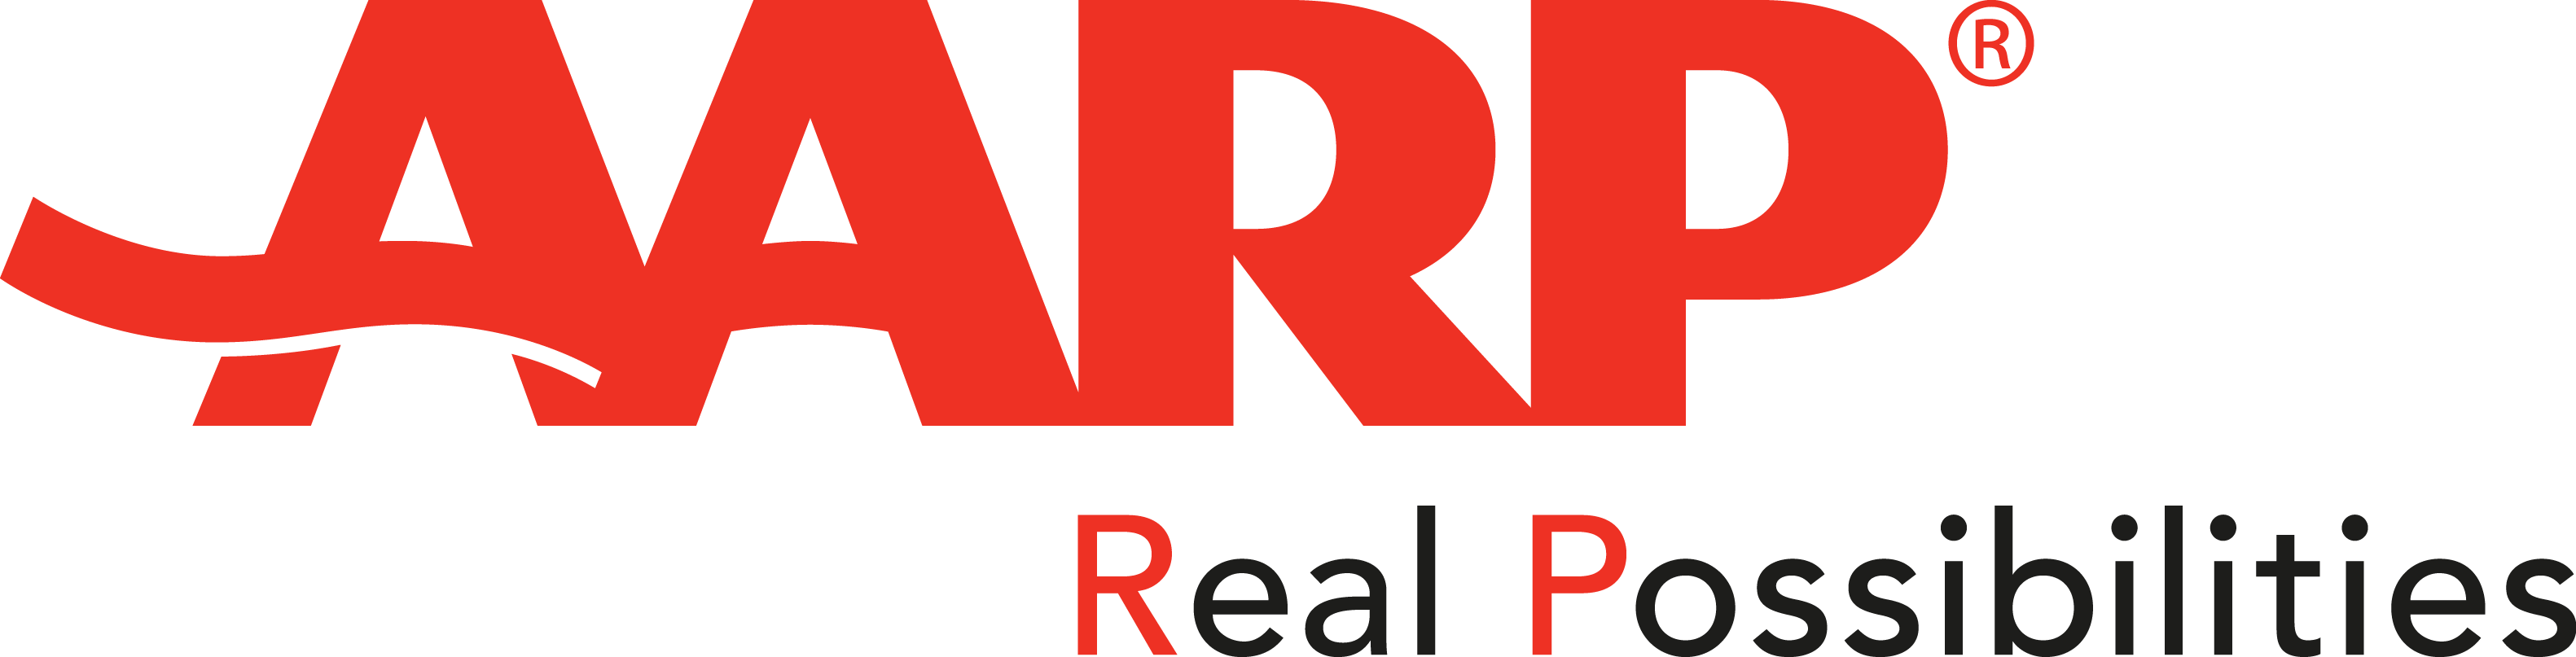 AARP Logo png